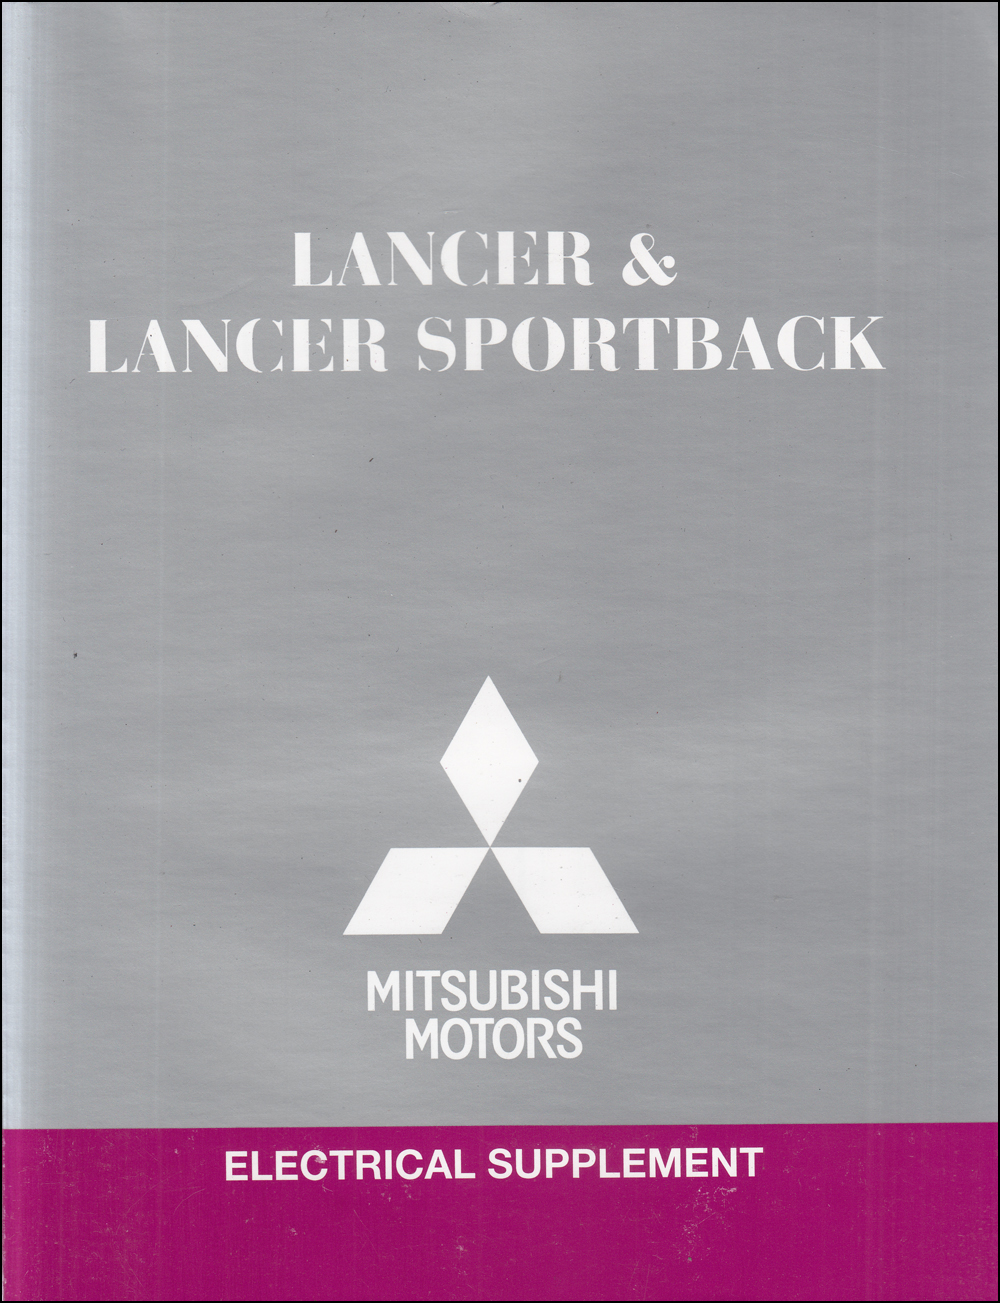 2012 Mitsubishi Lancer & Lancer Sportback Wiring Diagram Manual Original 